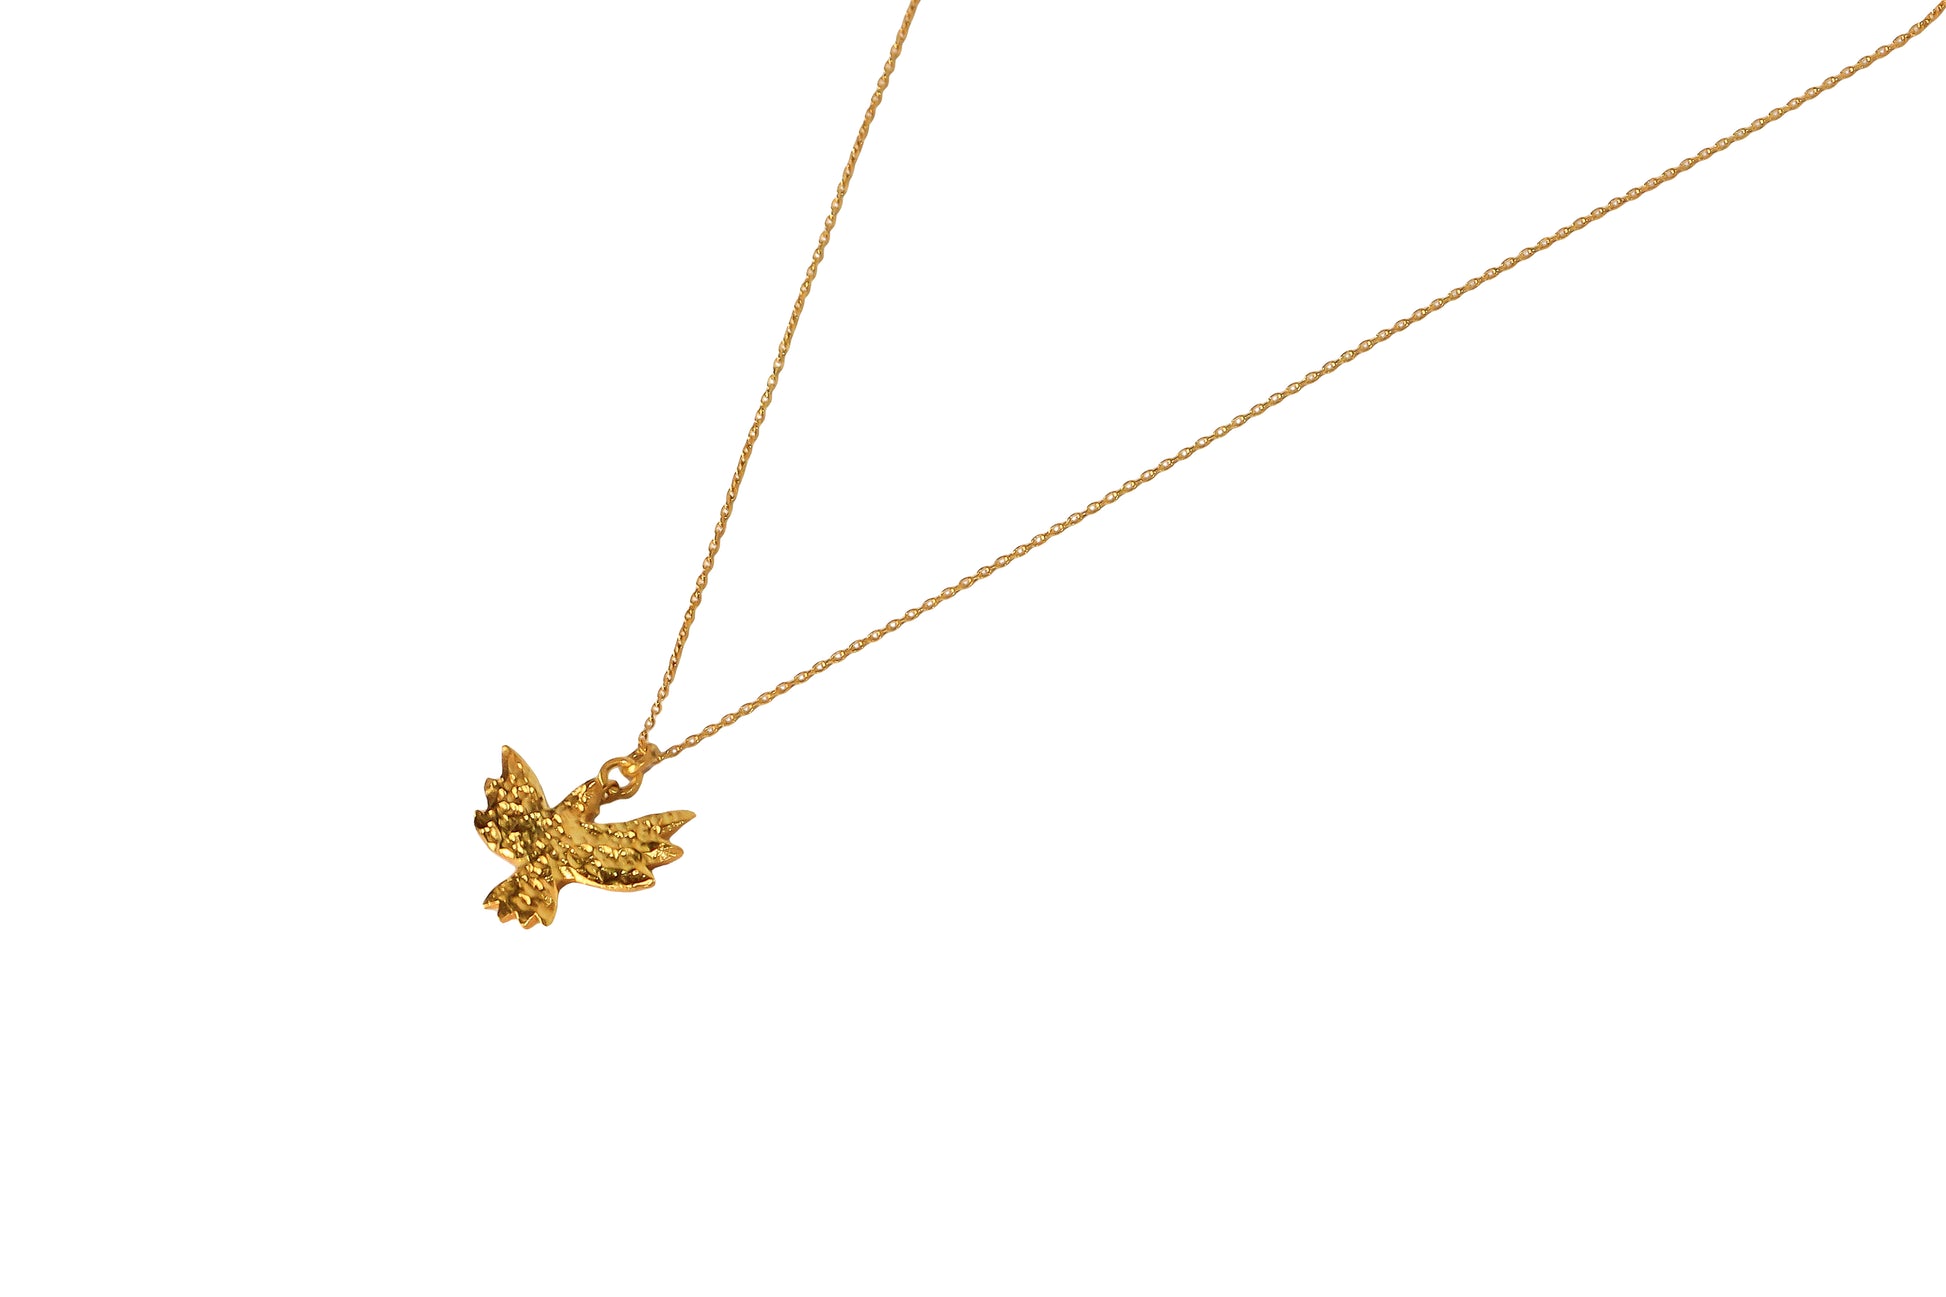 Bird gold necklace close up